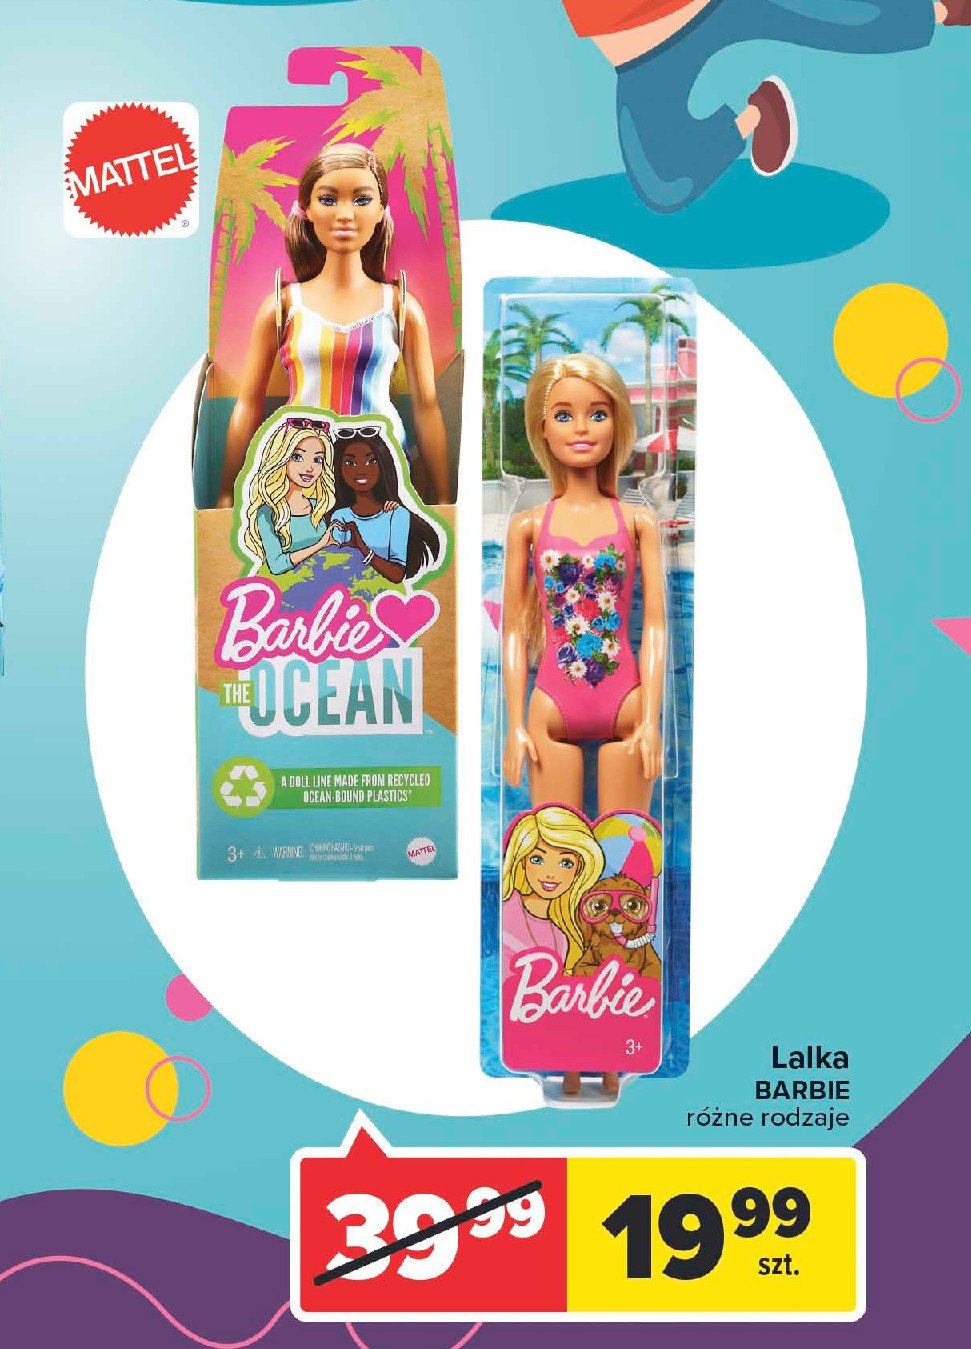 Barbie skarby oceanu Mattel promocja